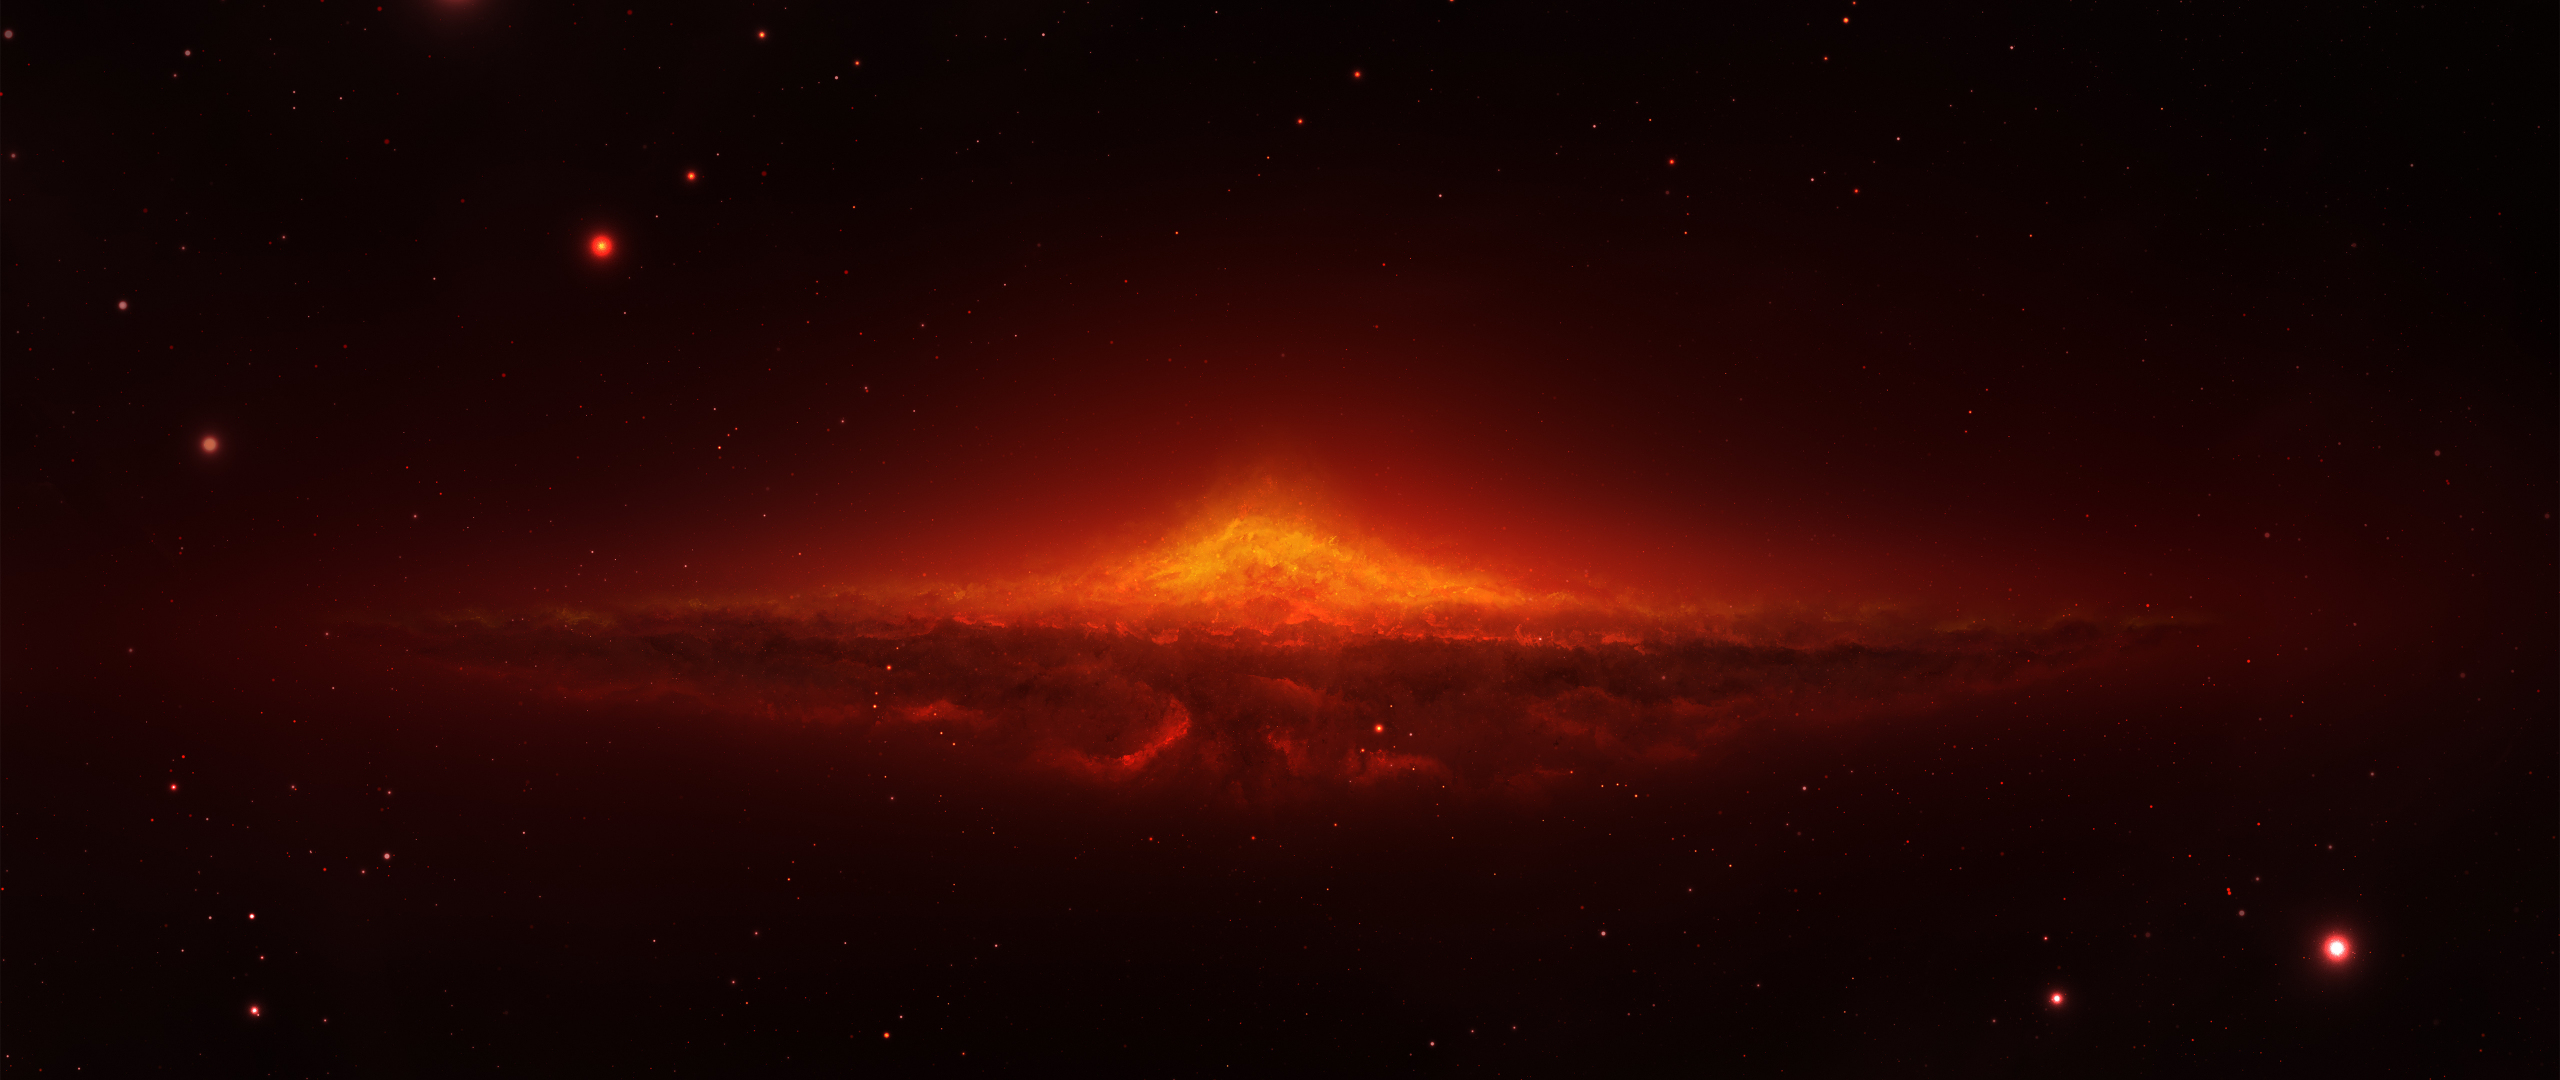 Hình nền đốt cháy ngôi sao Vũ trụ - Sắm cho thiết bị di động của bạn những hình nền tuyệt đẹp của vũ trụ, đặc biệt là các hình ảnh mang phong cách đốt cháy ngôi sao. Trải nghiệm những ngọn lửa và ánh sáng trên thanh kiếm không gian của bạn theo cách mới lạ.